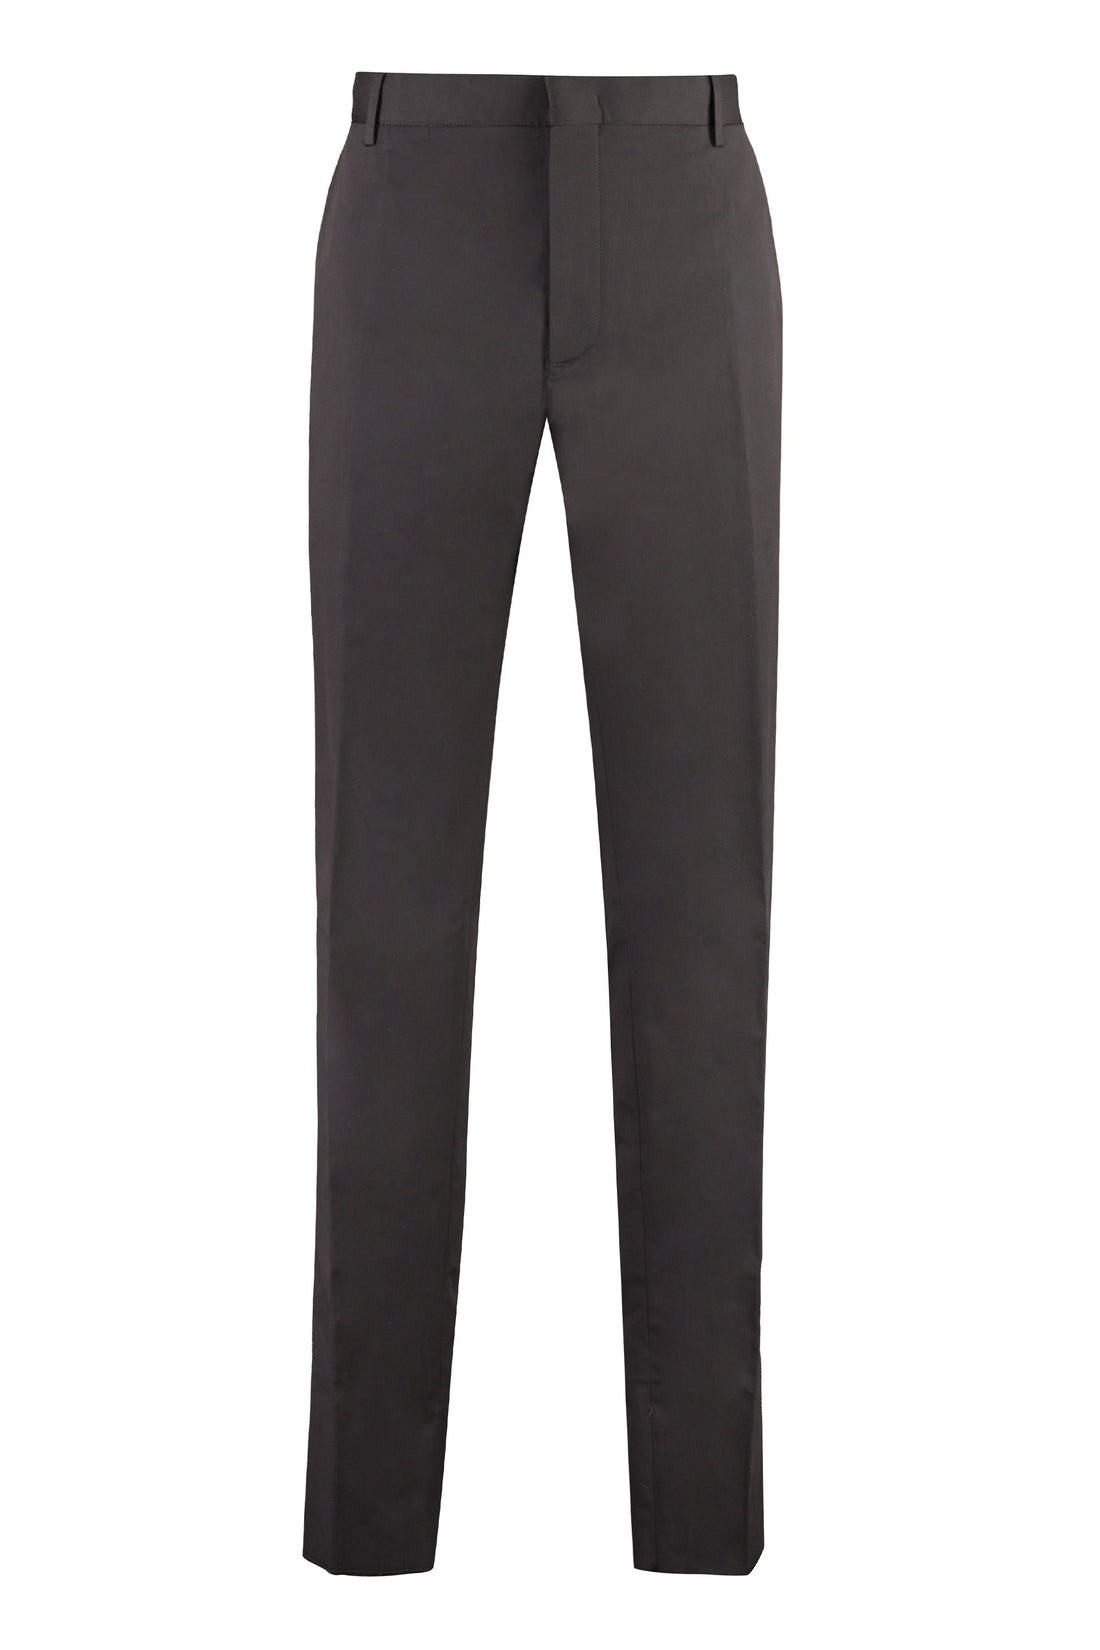 Piralo-OUTLET-SALE-Cotton trousers-ARCHIVIST